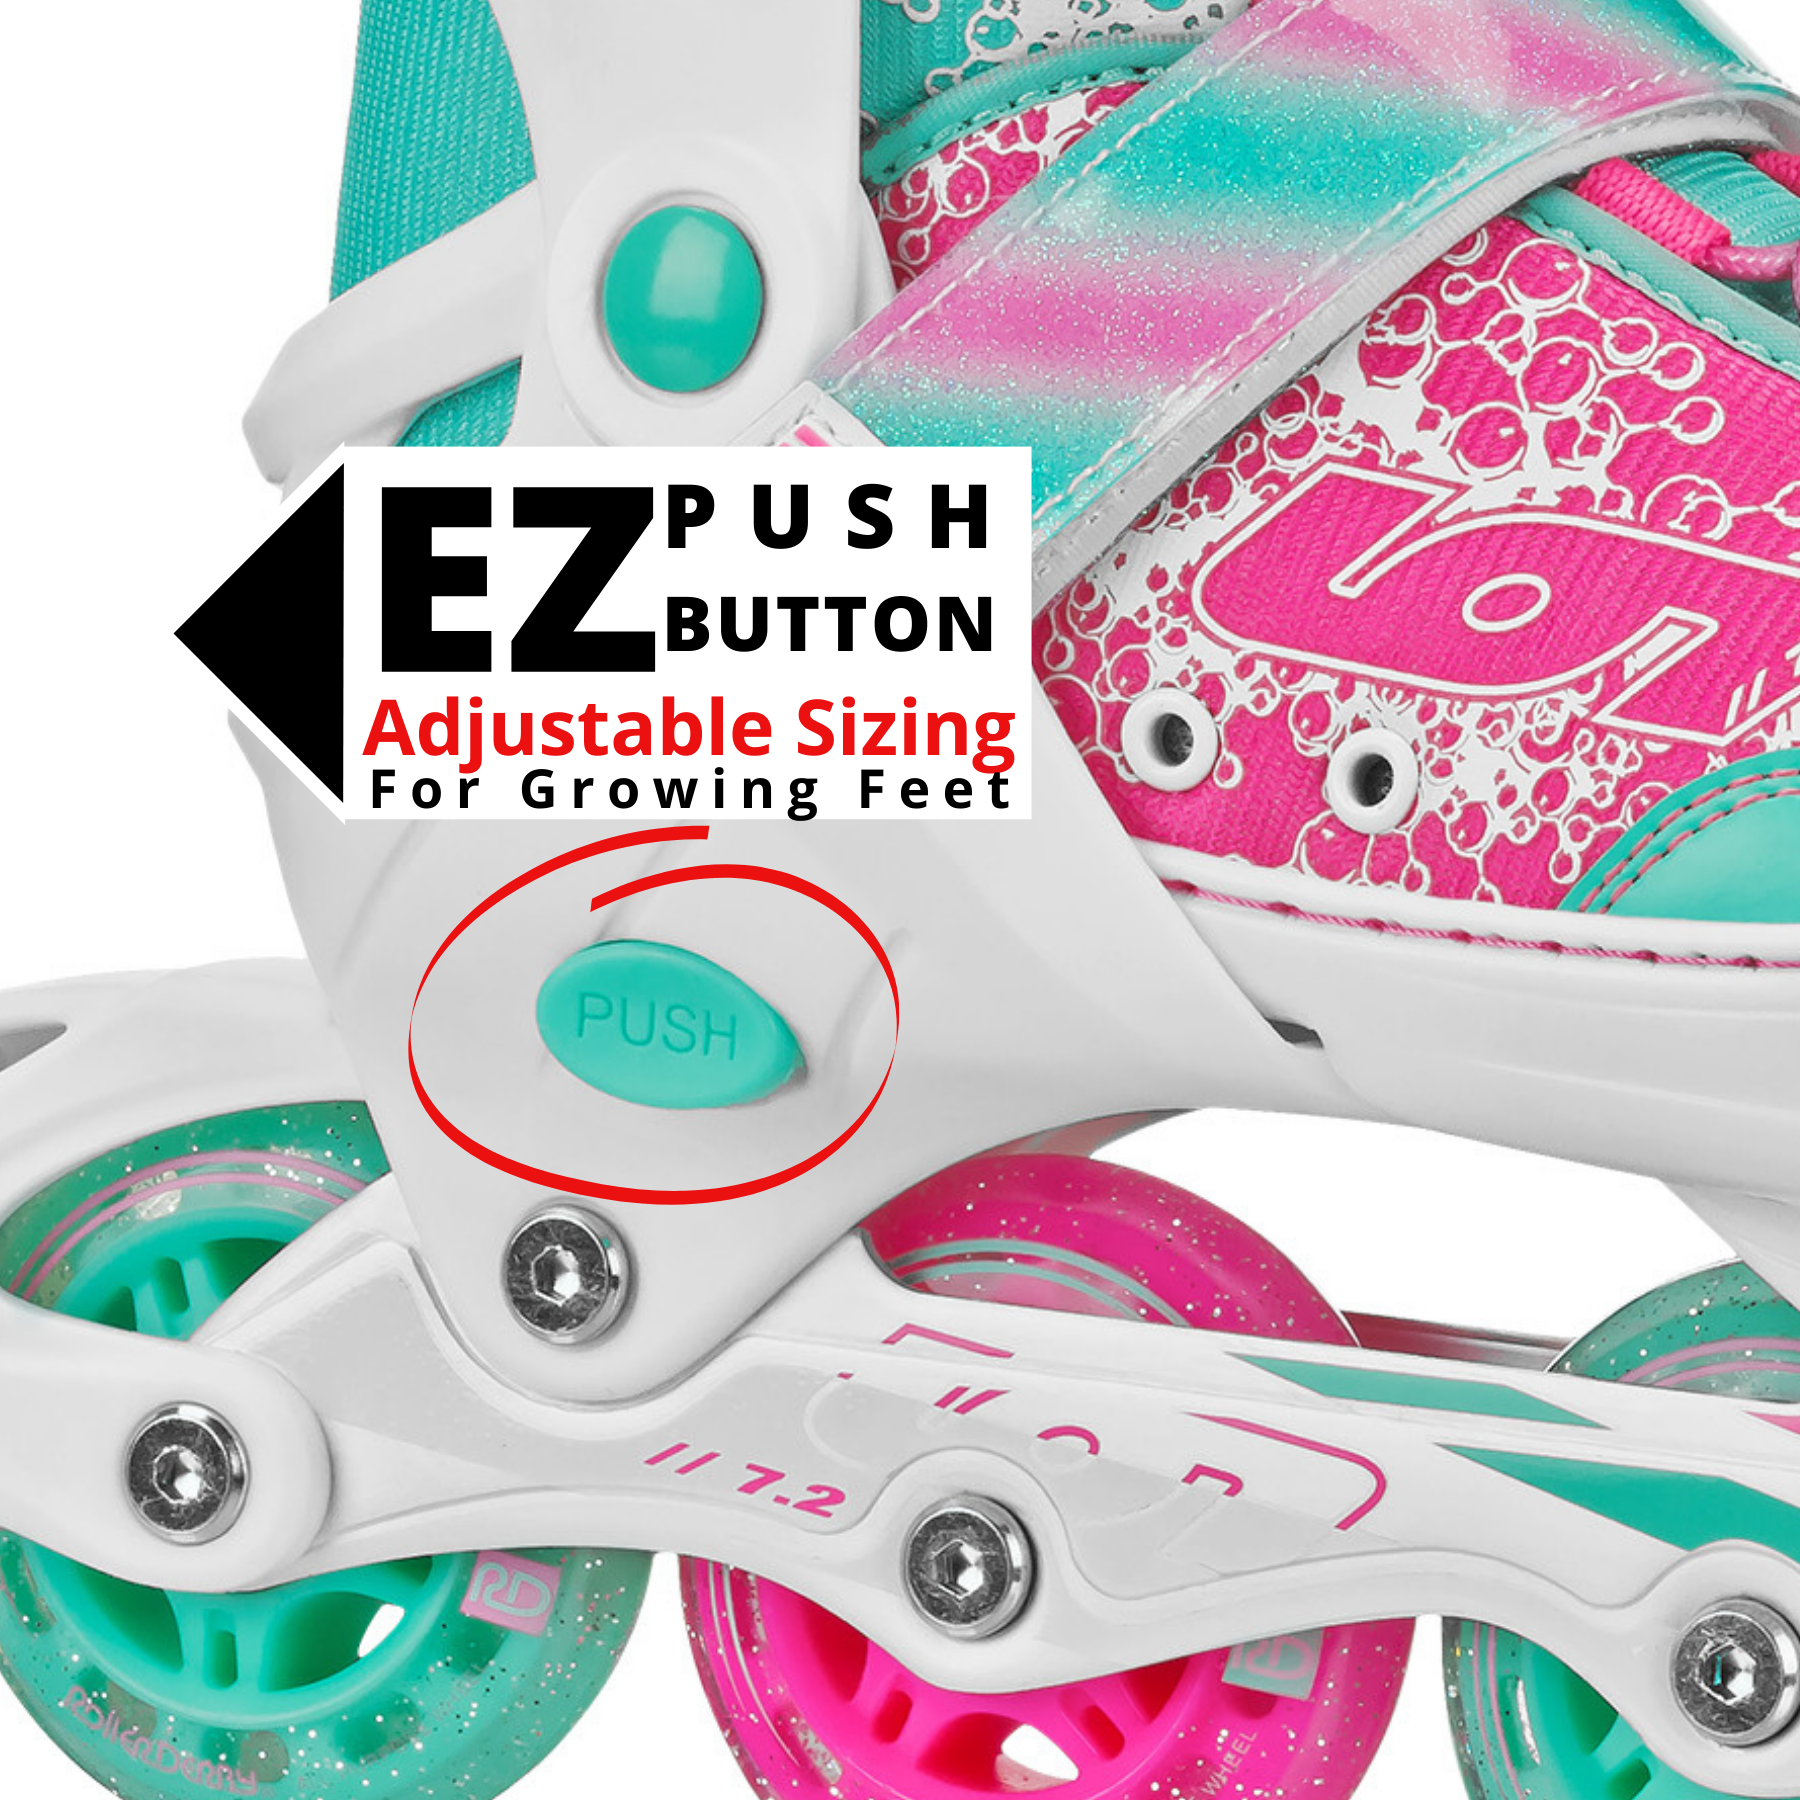 Roller Derby ION 7.2 Girl's Adjustable Inline Skate - image 4 of 9